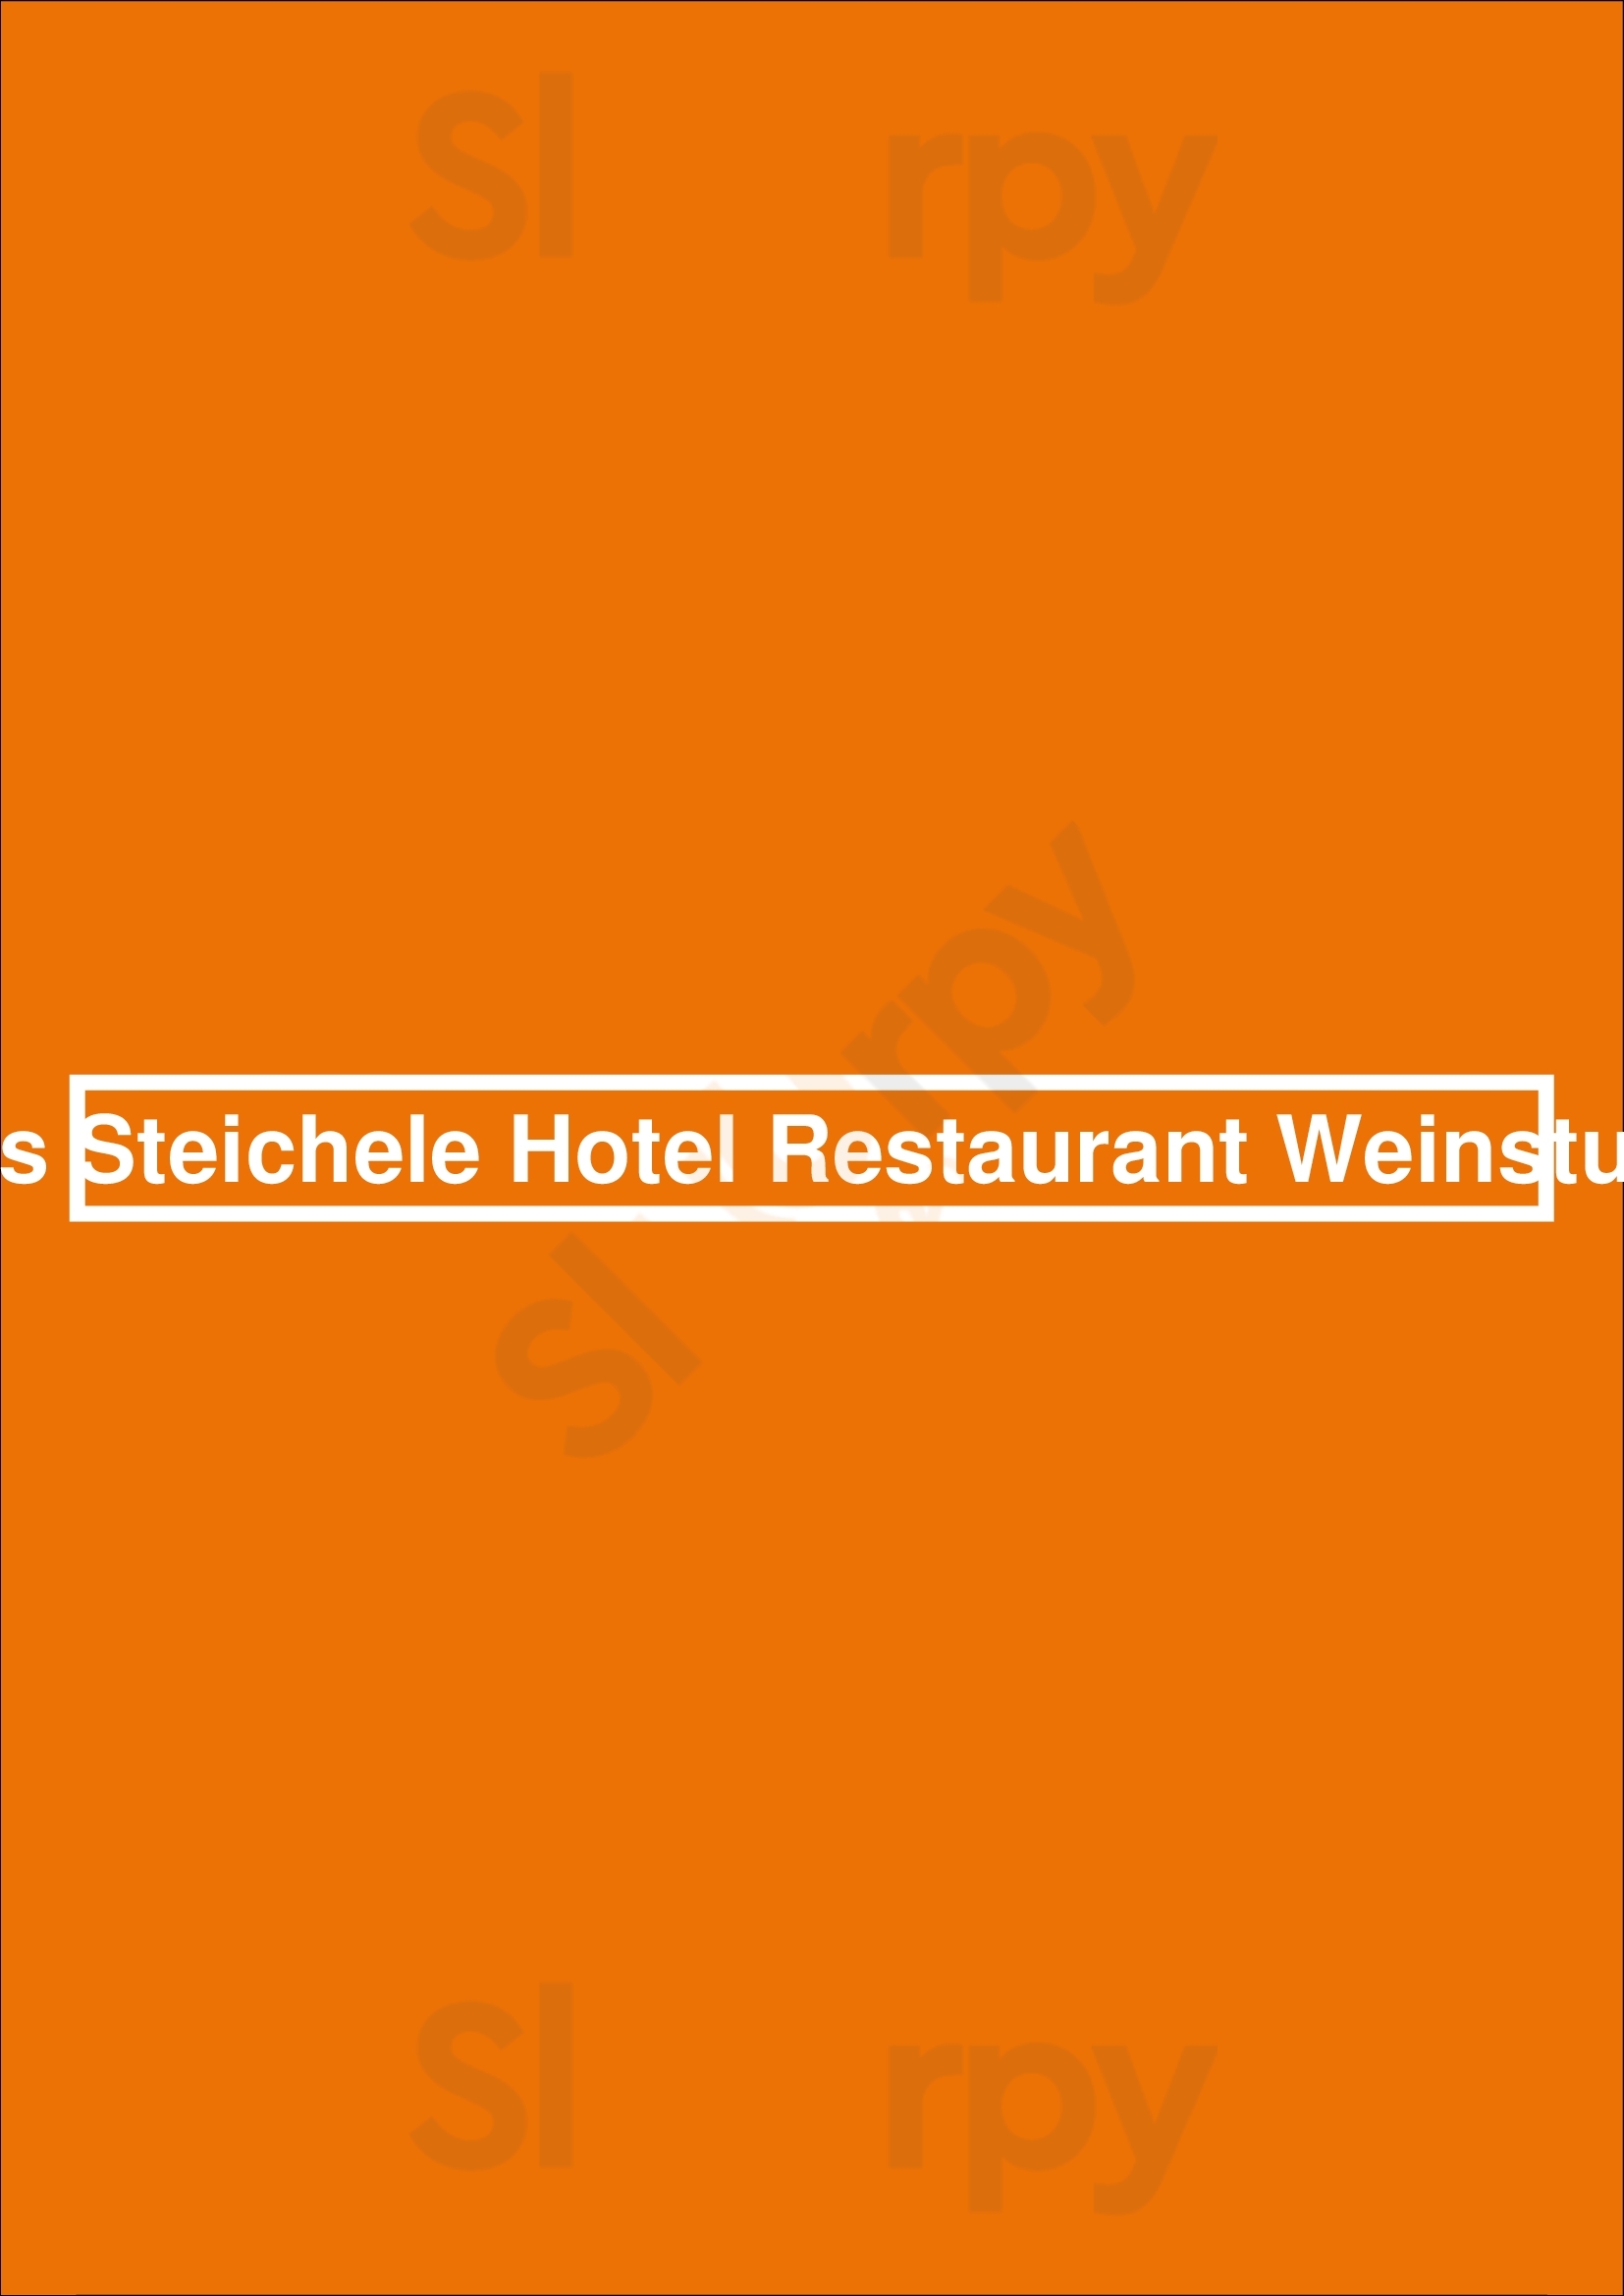 Das Steichele Hotel Restaurant Weinstube Nürnberg Menu - 1